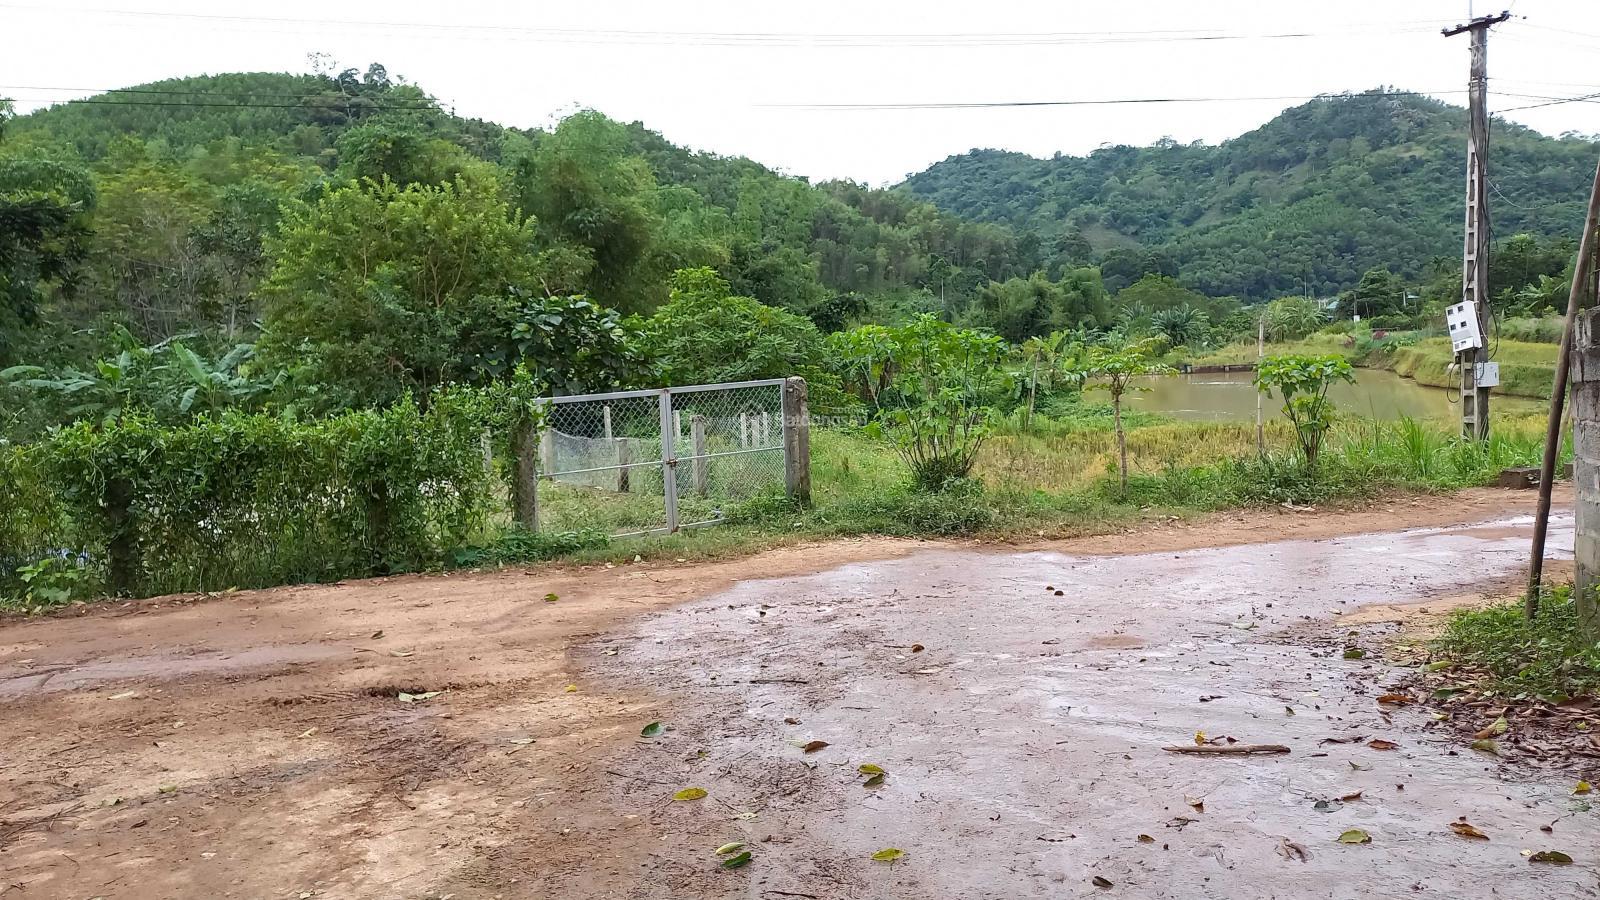 Nhanh tay còn kịp, chính chủ cần bán ngay lô đất 10.000m2 đất nhà ở và đất vườn tại xã Quang Tiến